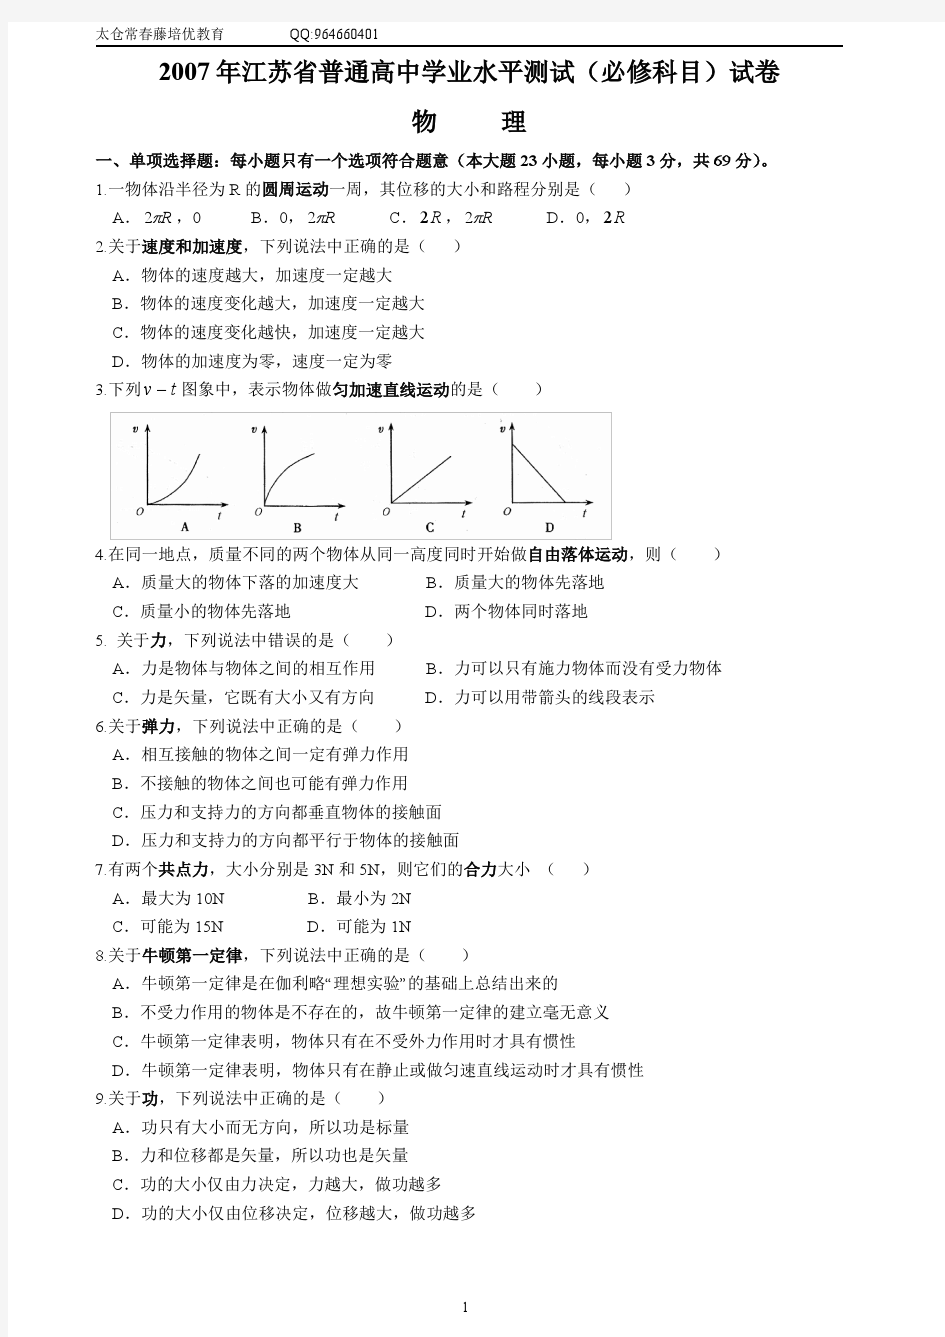 2007-2013江苏省学业水平测试《物理》试卷(附答案) 修正错误并完美排版